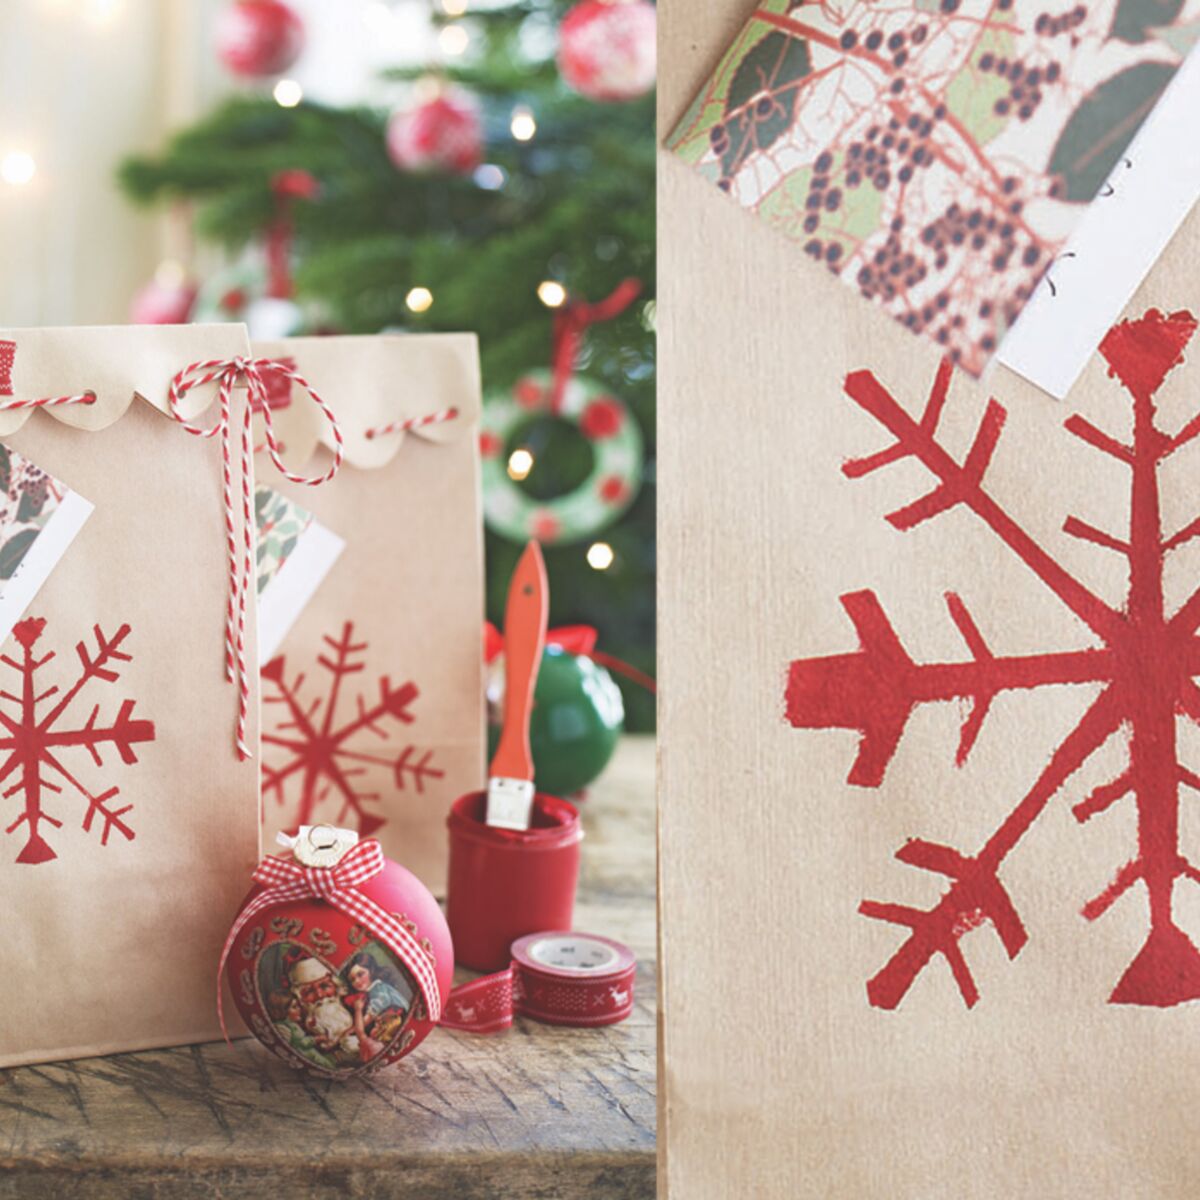 DIY de Noël : fabriquer de jolies pochettes cadeau - Cultura